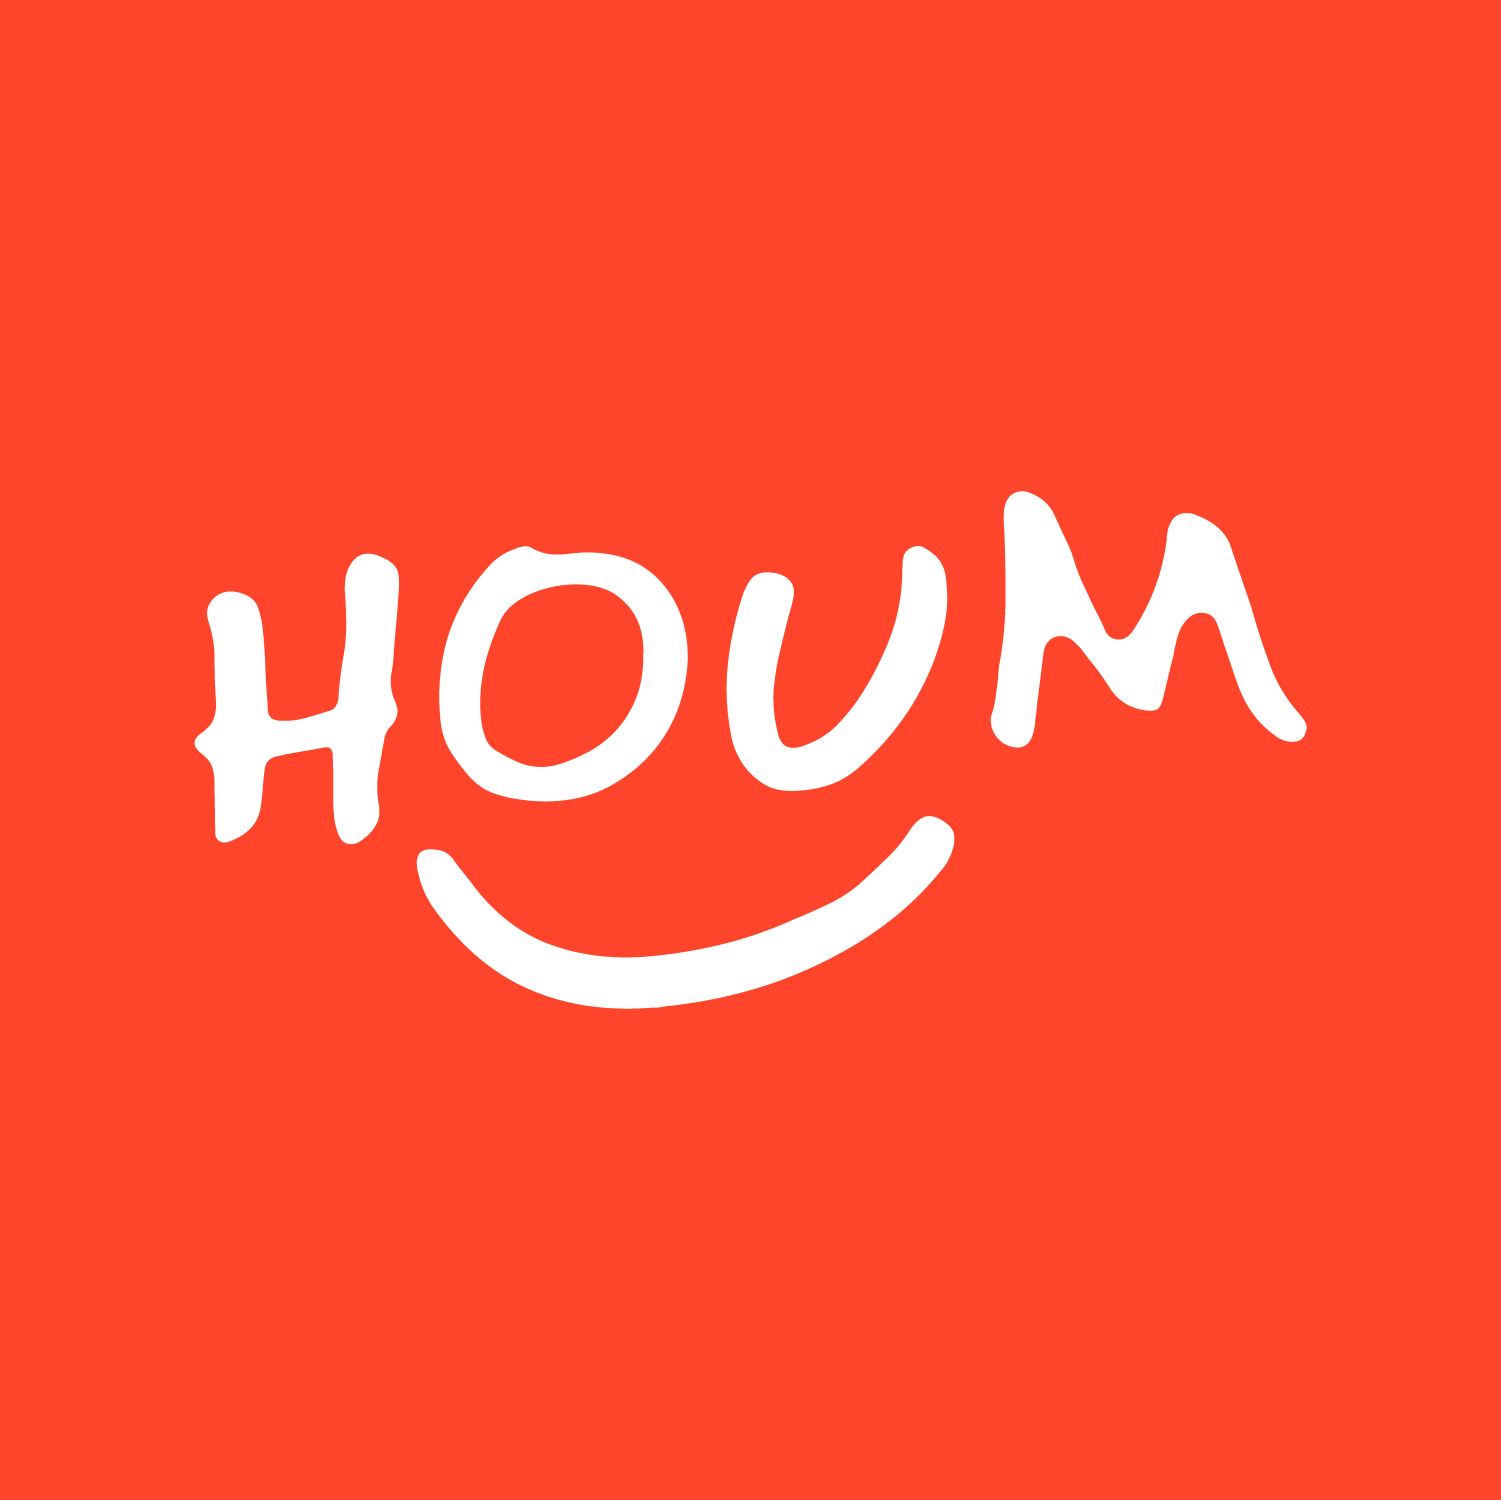 Logo Houm 2021 Square (1) (1).jpg